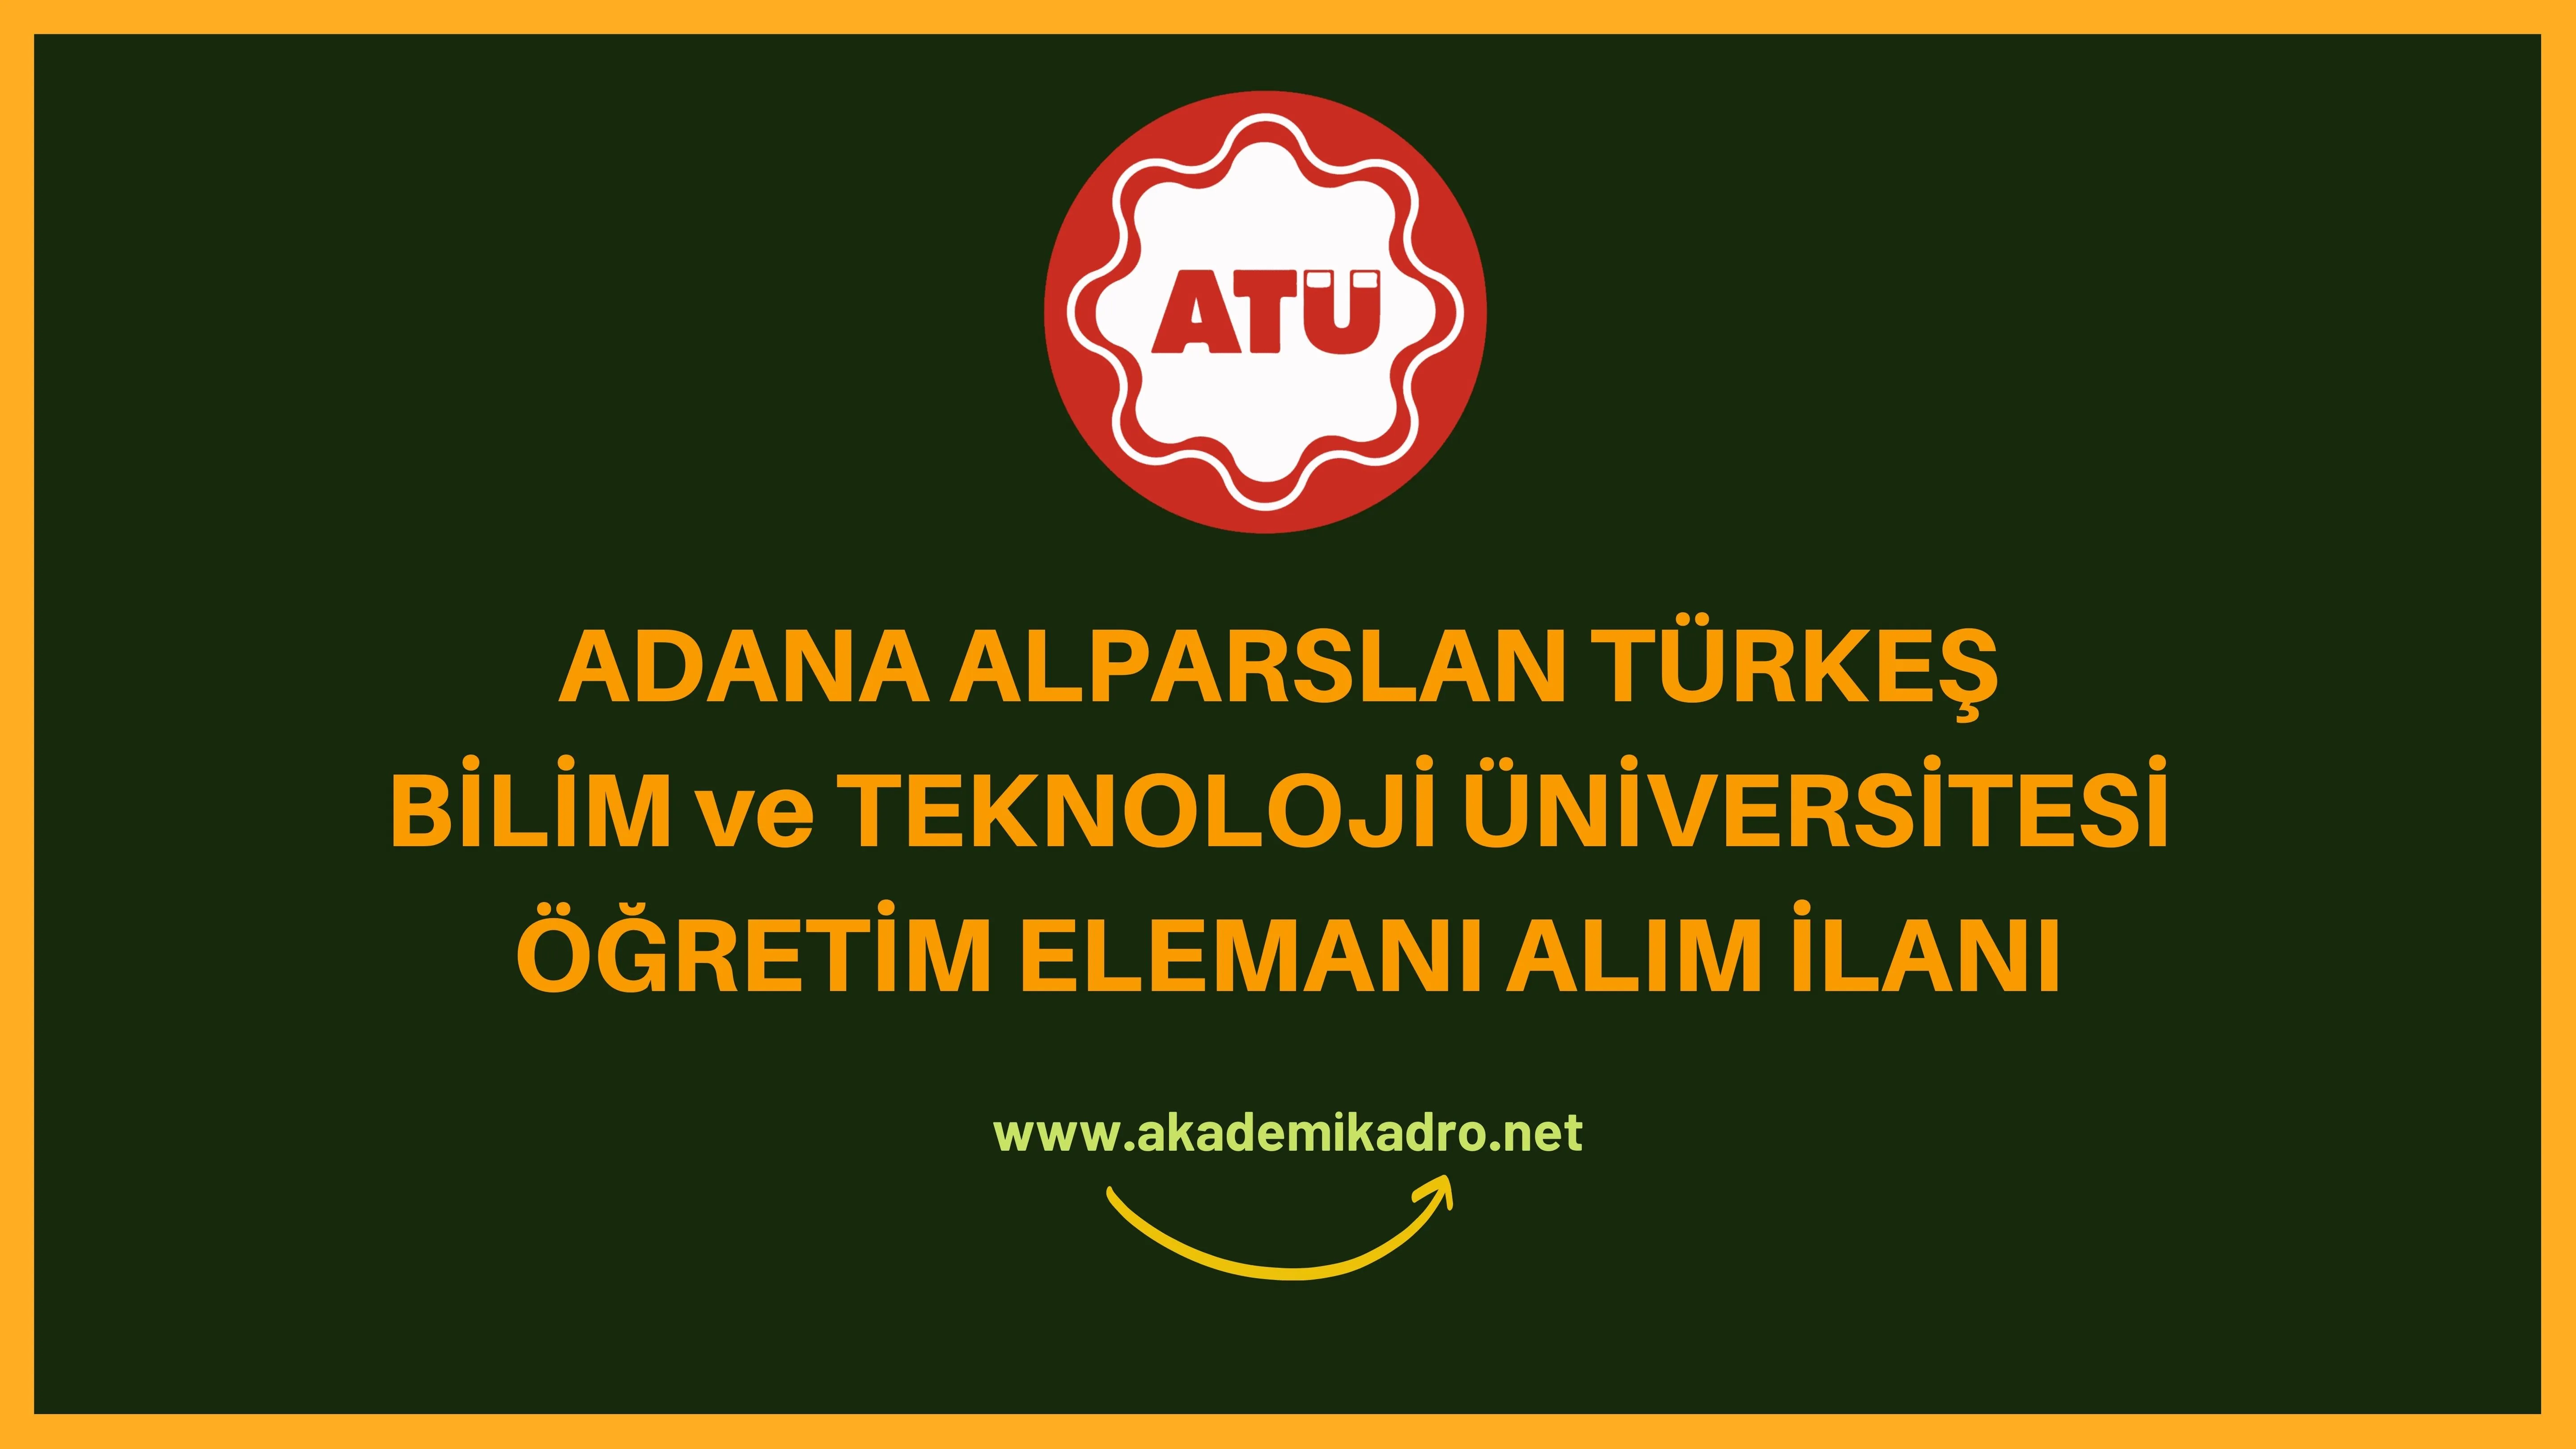 Adana Alparslan Türkeş Bilim ve Teknoloji Üniversitesi 8 Araştırma görevlisi ve 5 Öğretim görevlisi alacaktır. Son başvuru tarihi 26 Aralık 2022